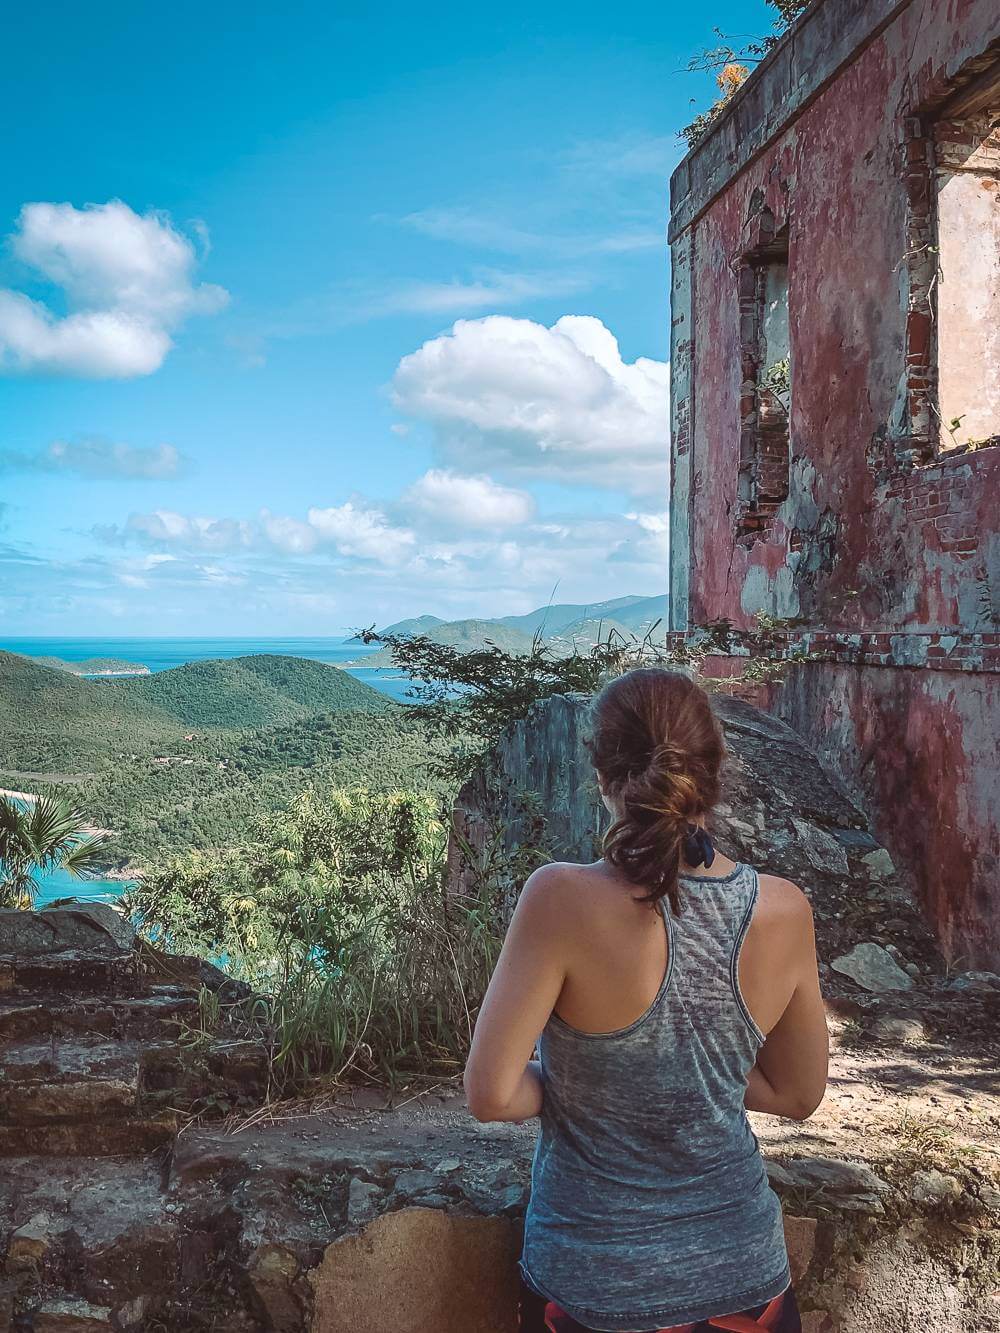  брюнетка в майке рядом с руинами плантации с видом на залив Махо 